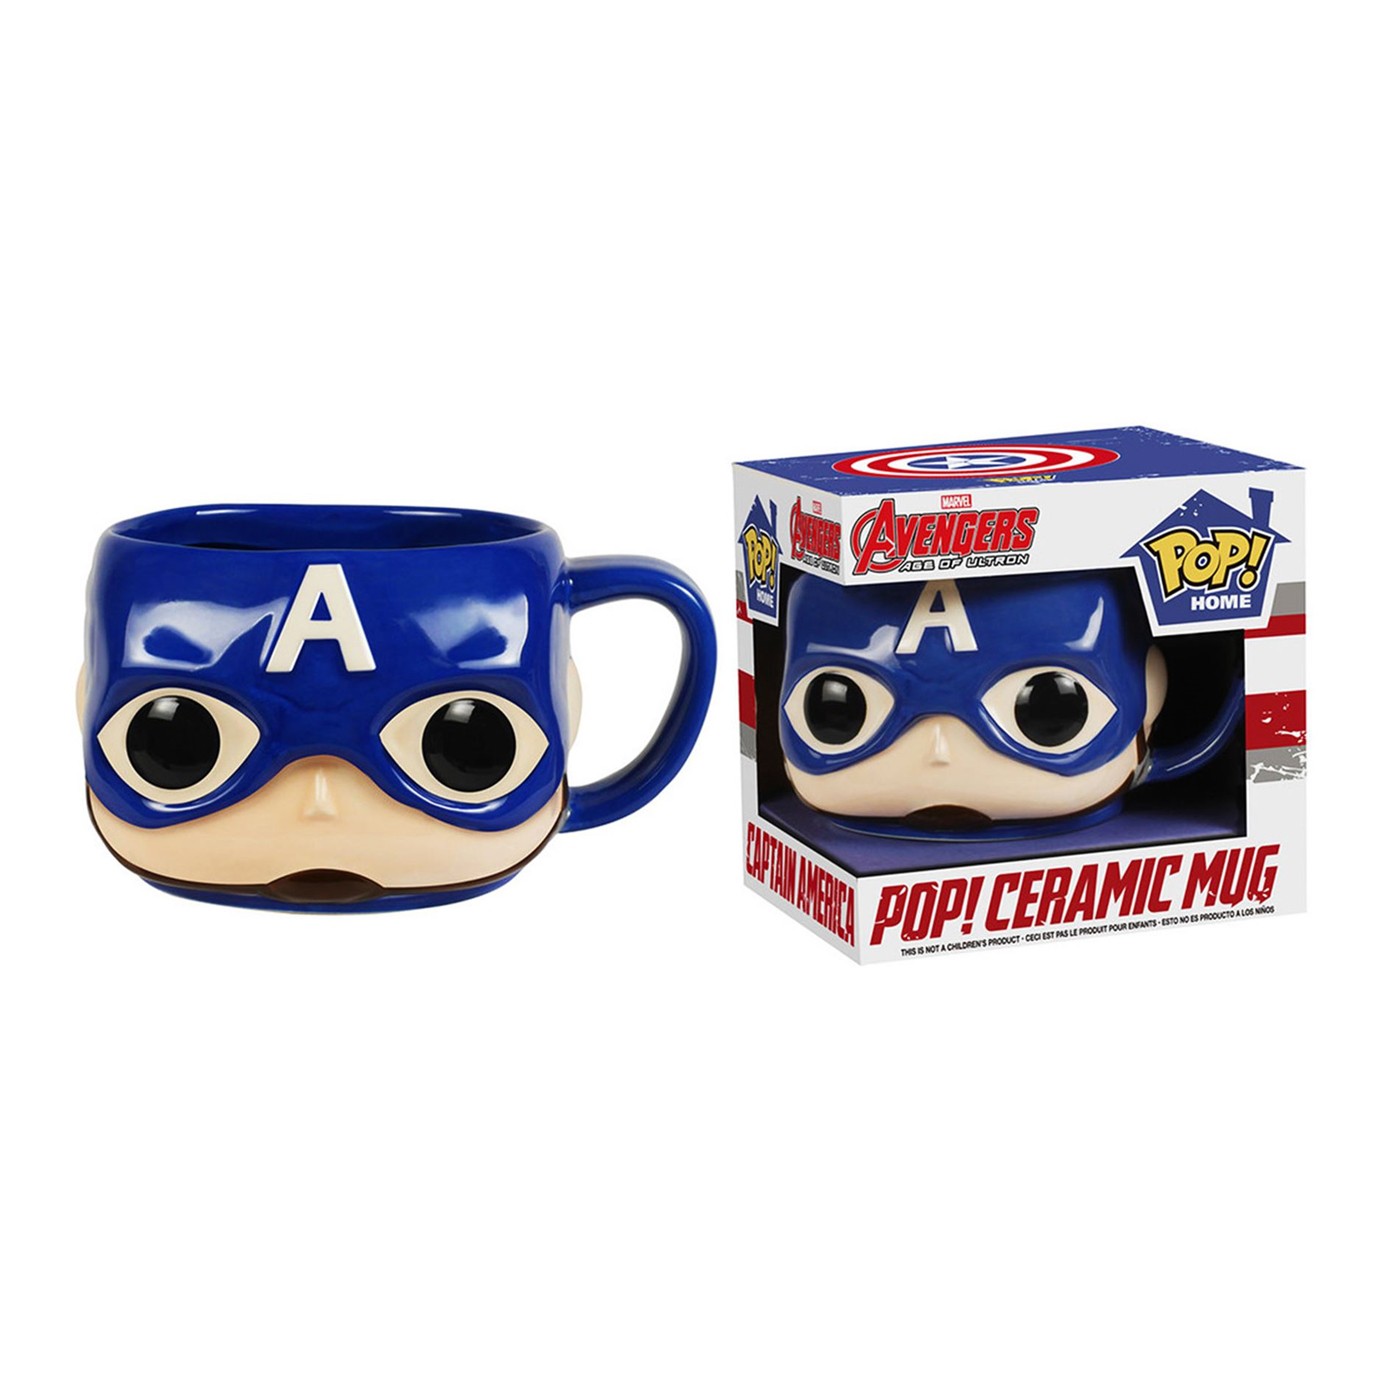 Captain America Pop Home Ceramic 12oz Mug